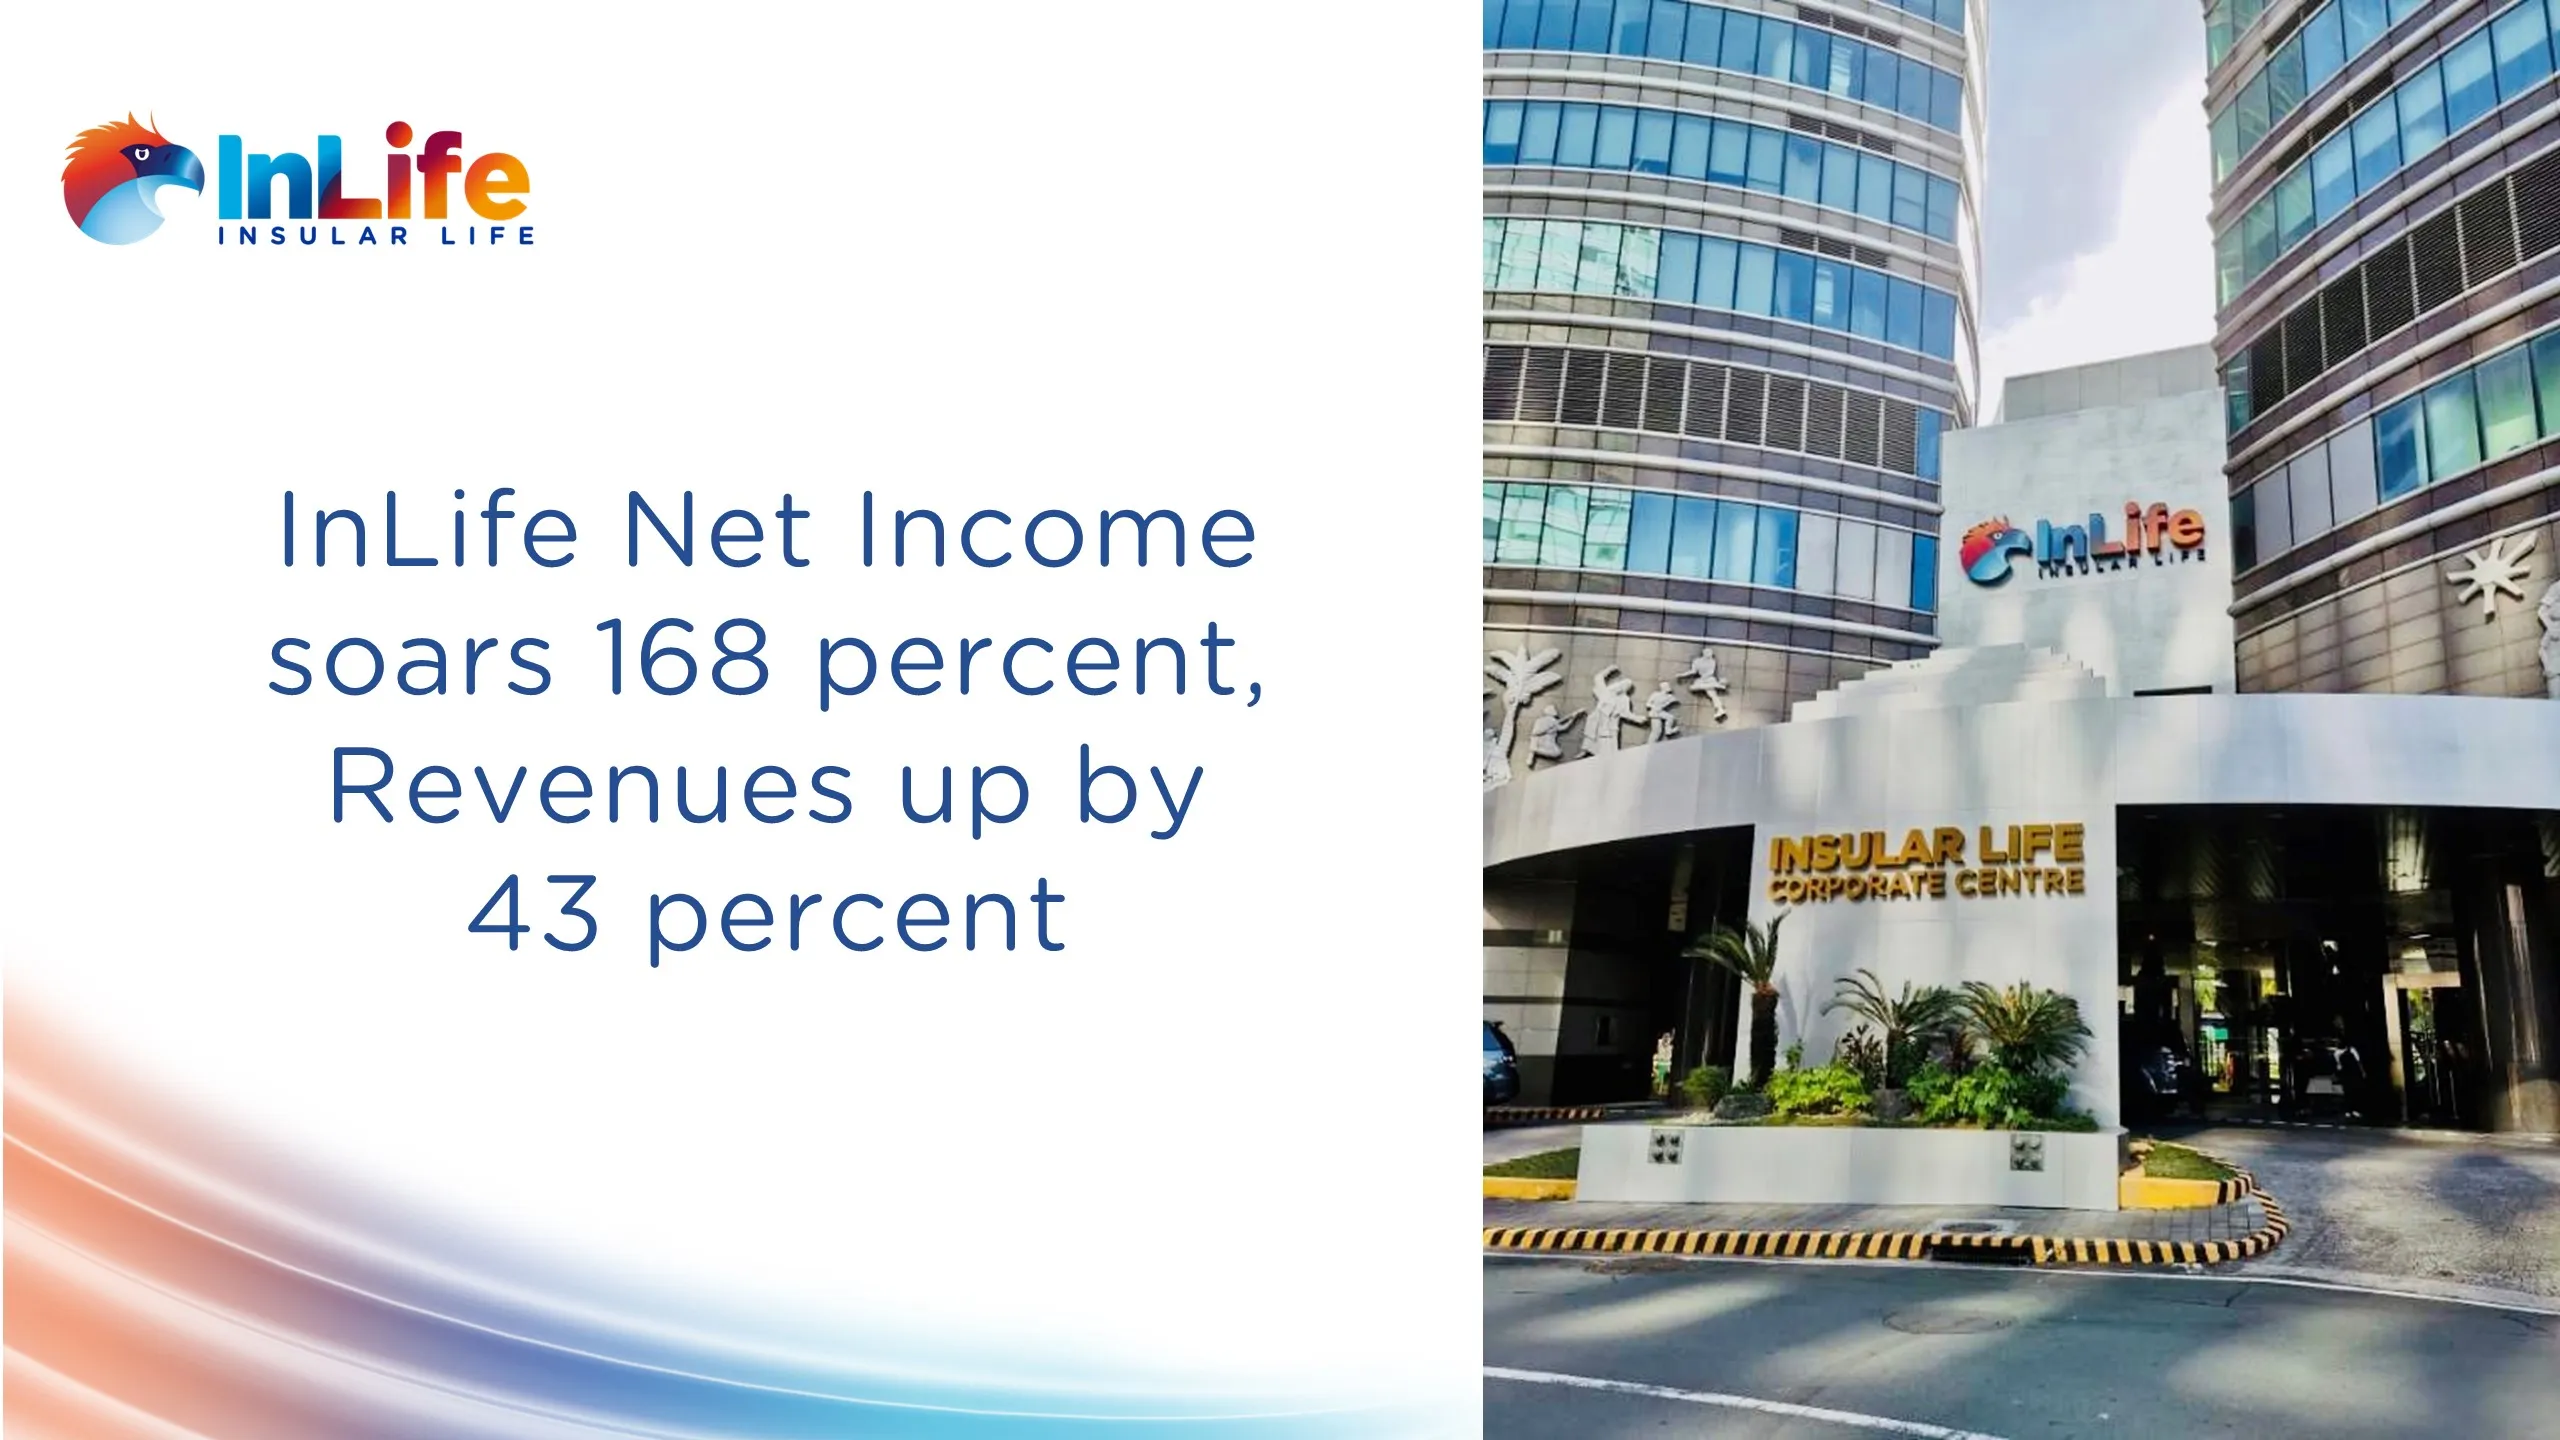 inlife-net-income-soars-168-percent-revenues-up-43-percent